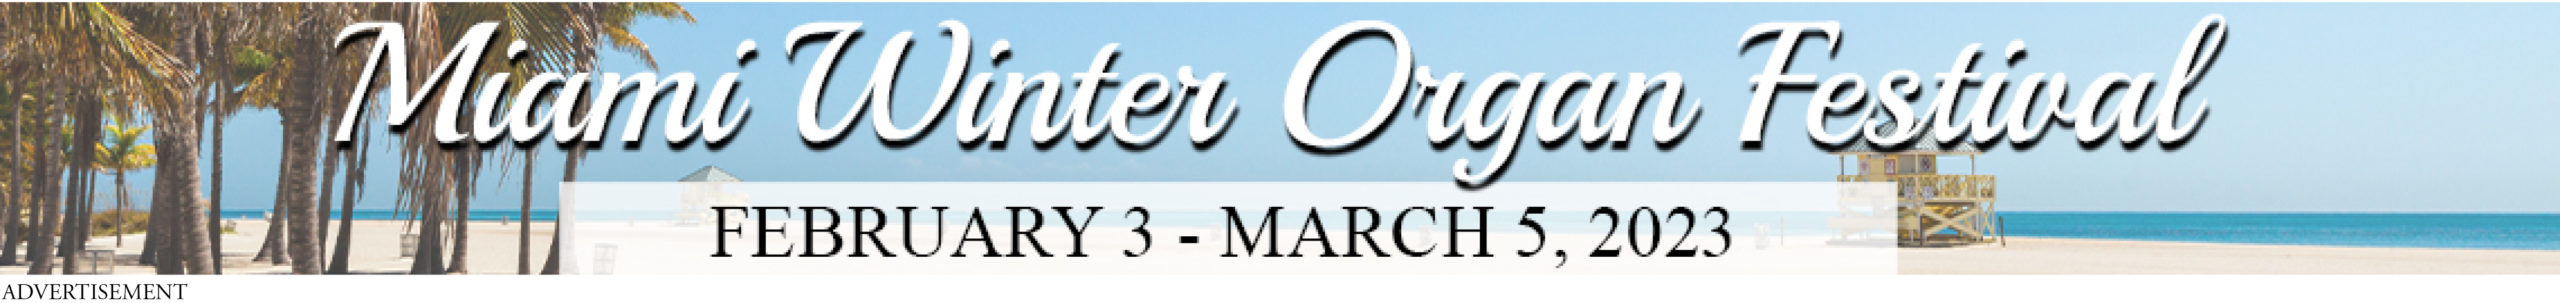 Miami Organ Festival banner ad